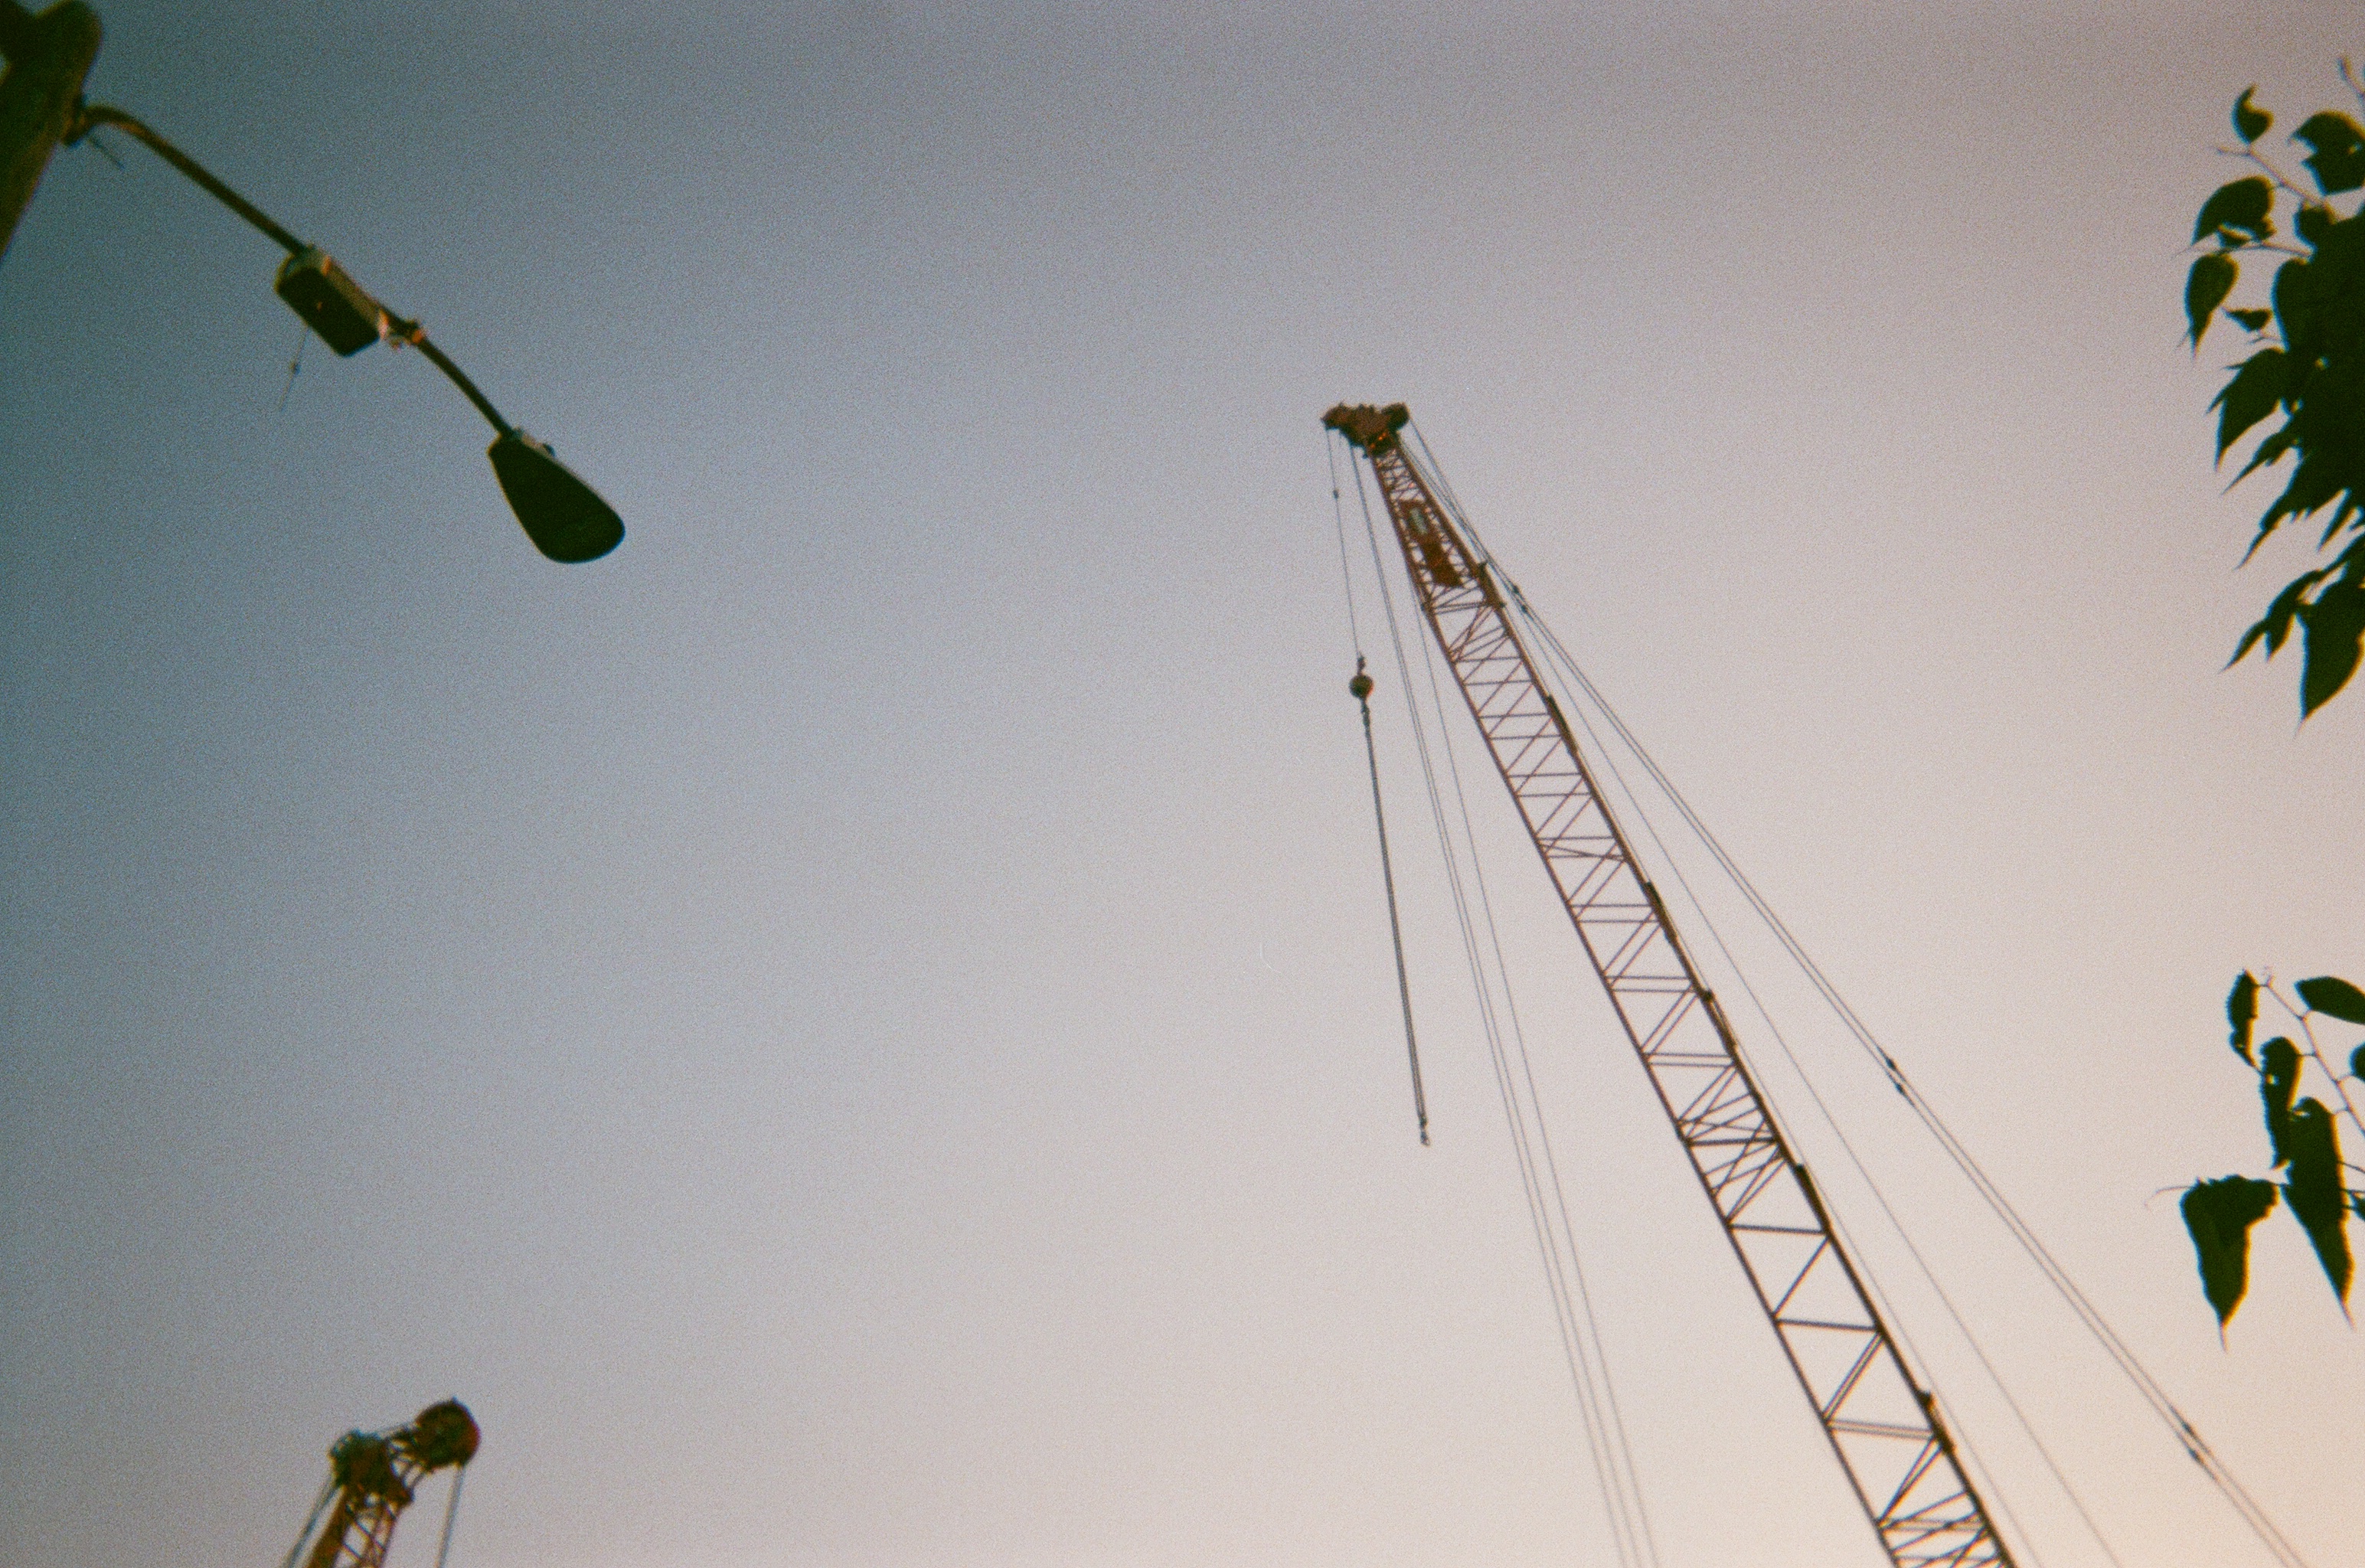 Construction crane sticks straight into the sky